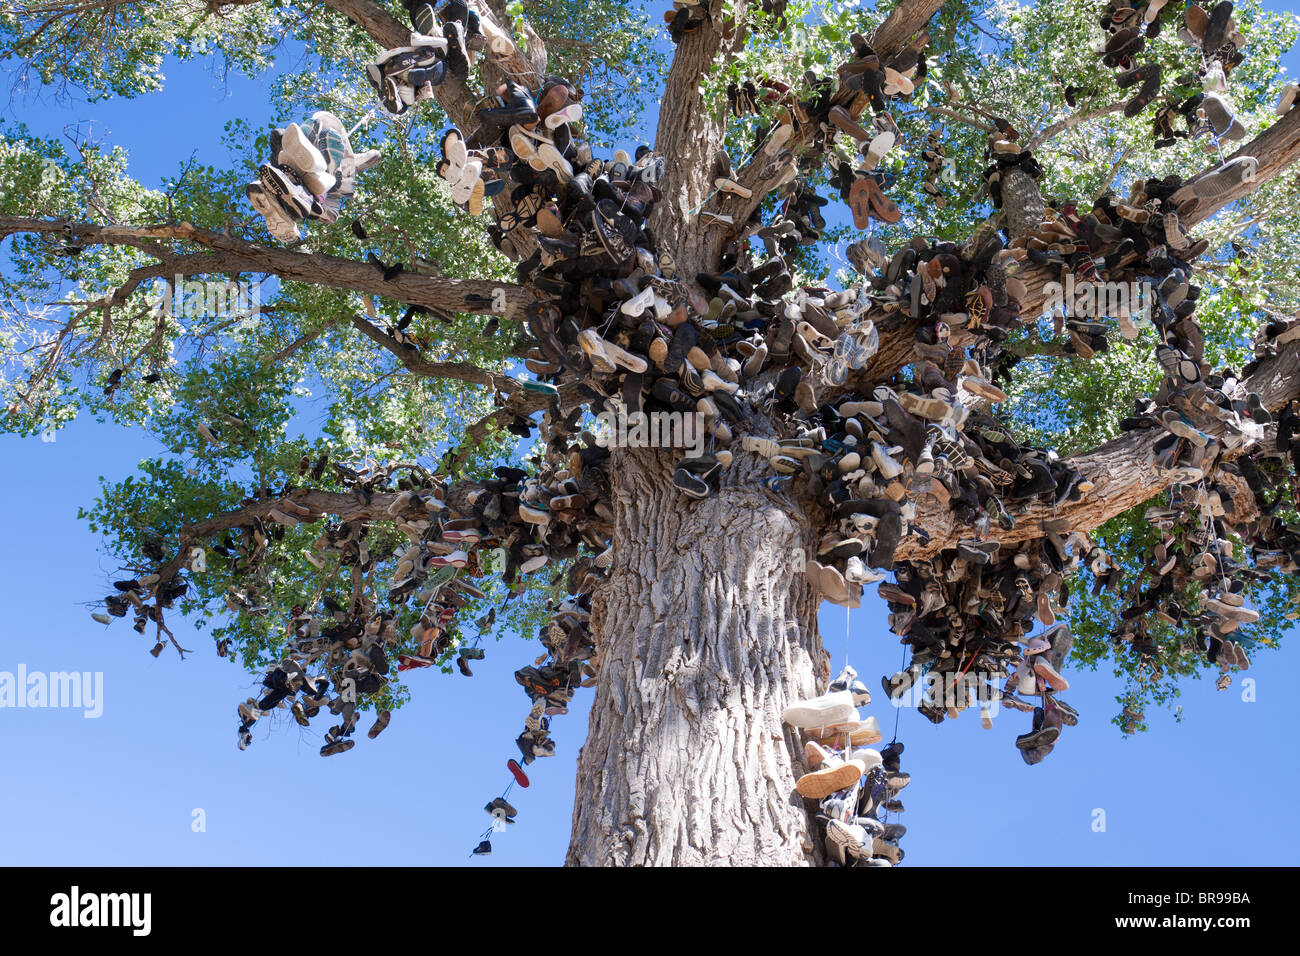 Shoe tree - Des centaines de chaussures se balançant d'un peuplier de l'arbre, une bizarrerie sur le côté de la route sur l'autoroute 50 dans la région de Nevada, États-Unis Banque D'Images